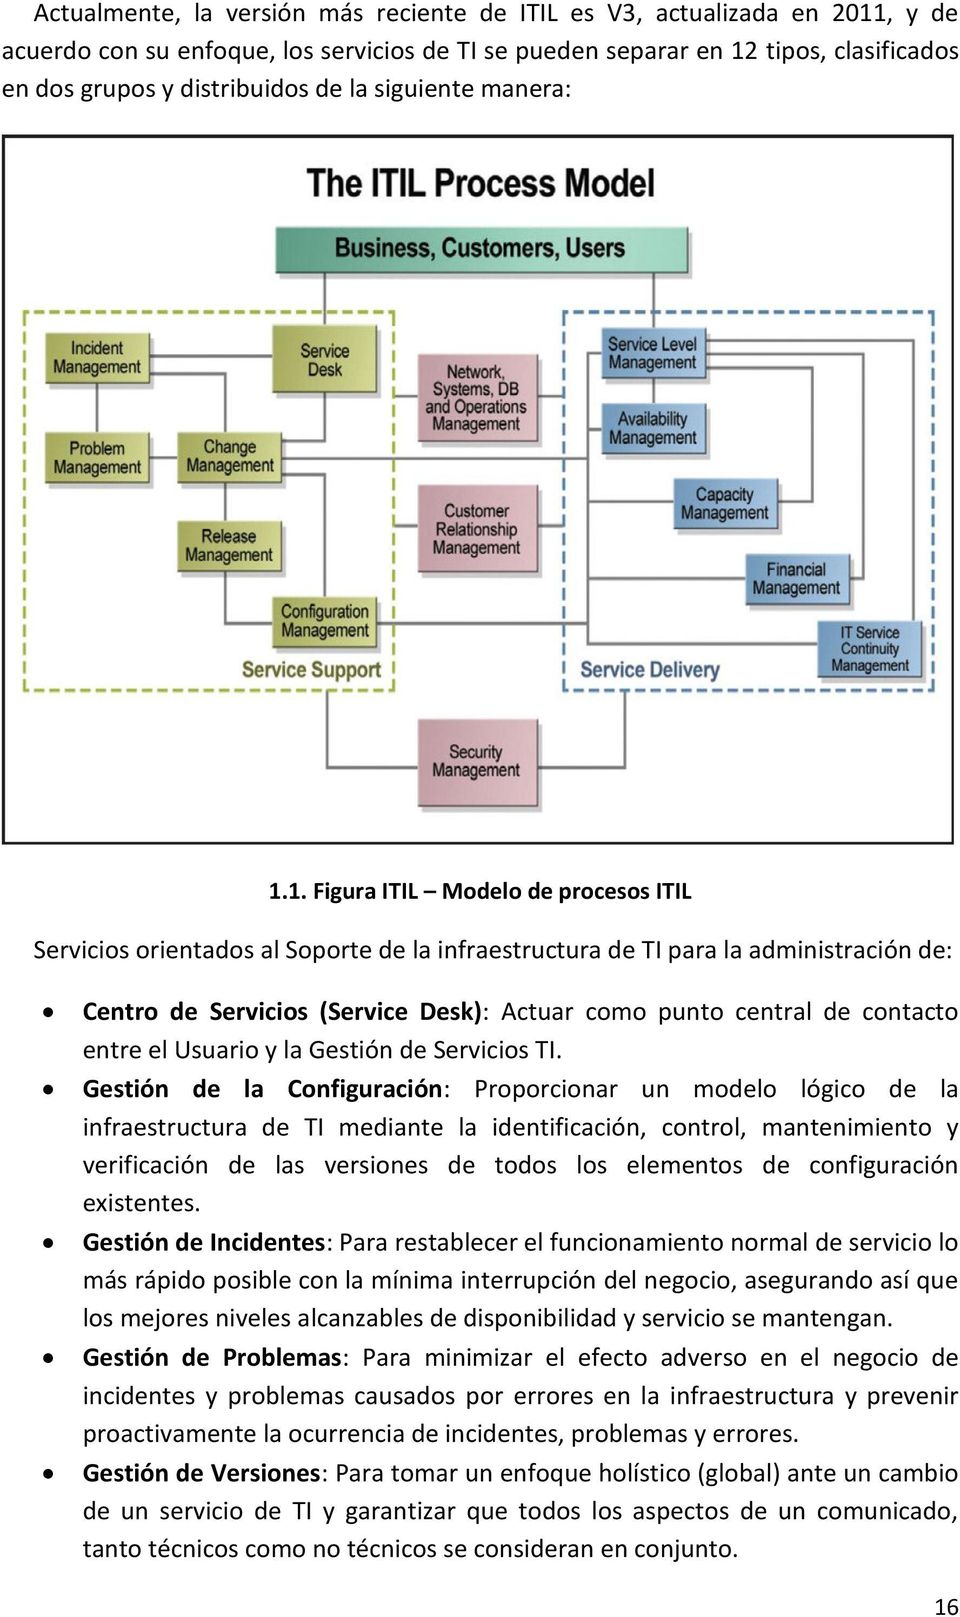 1. Figura ITIL Modelo de procesos ITIL Servicios orientados al Soporte de la infraestructura de TI para la administración de: Centro de Servicios (Service Desk): Actuar como punto central de contacto